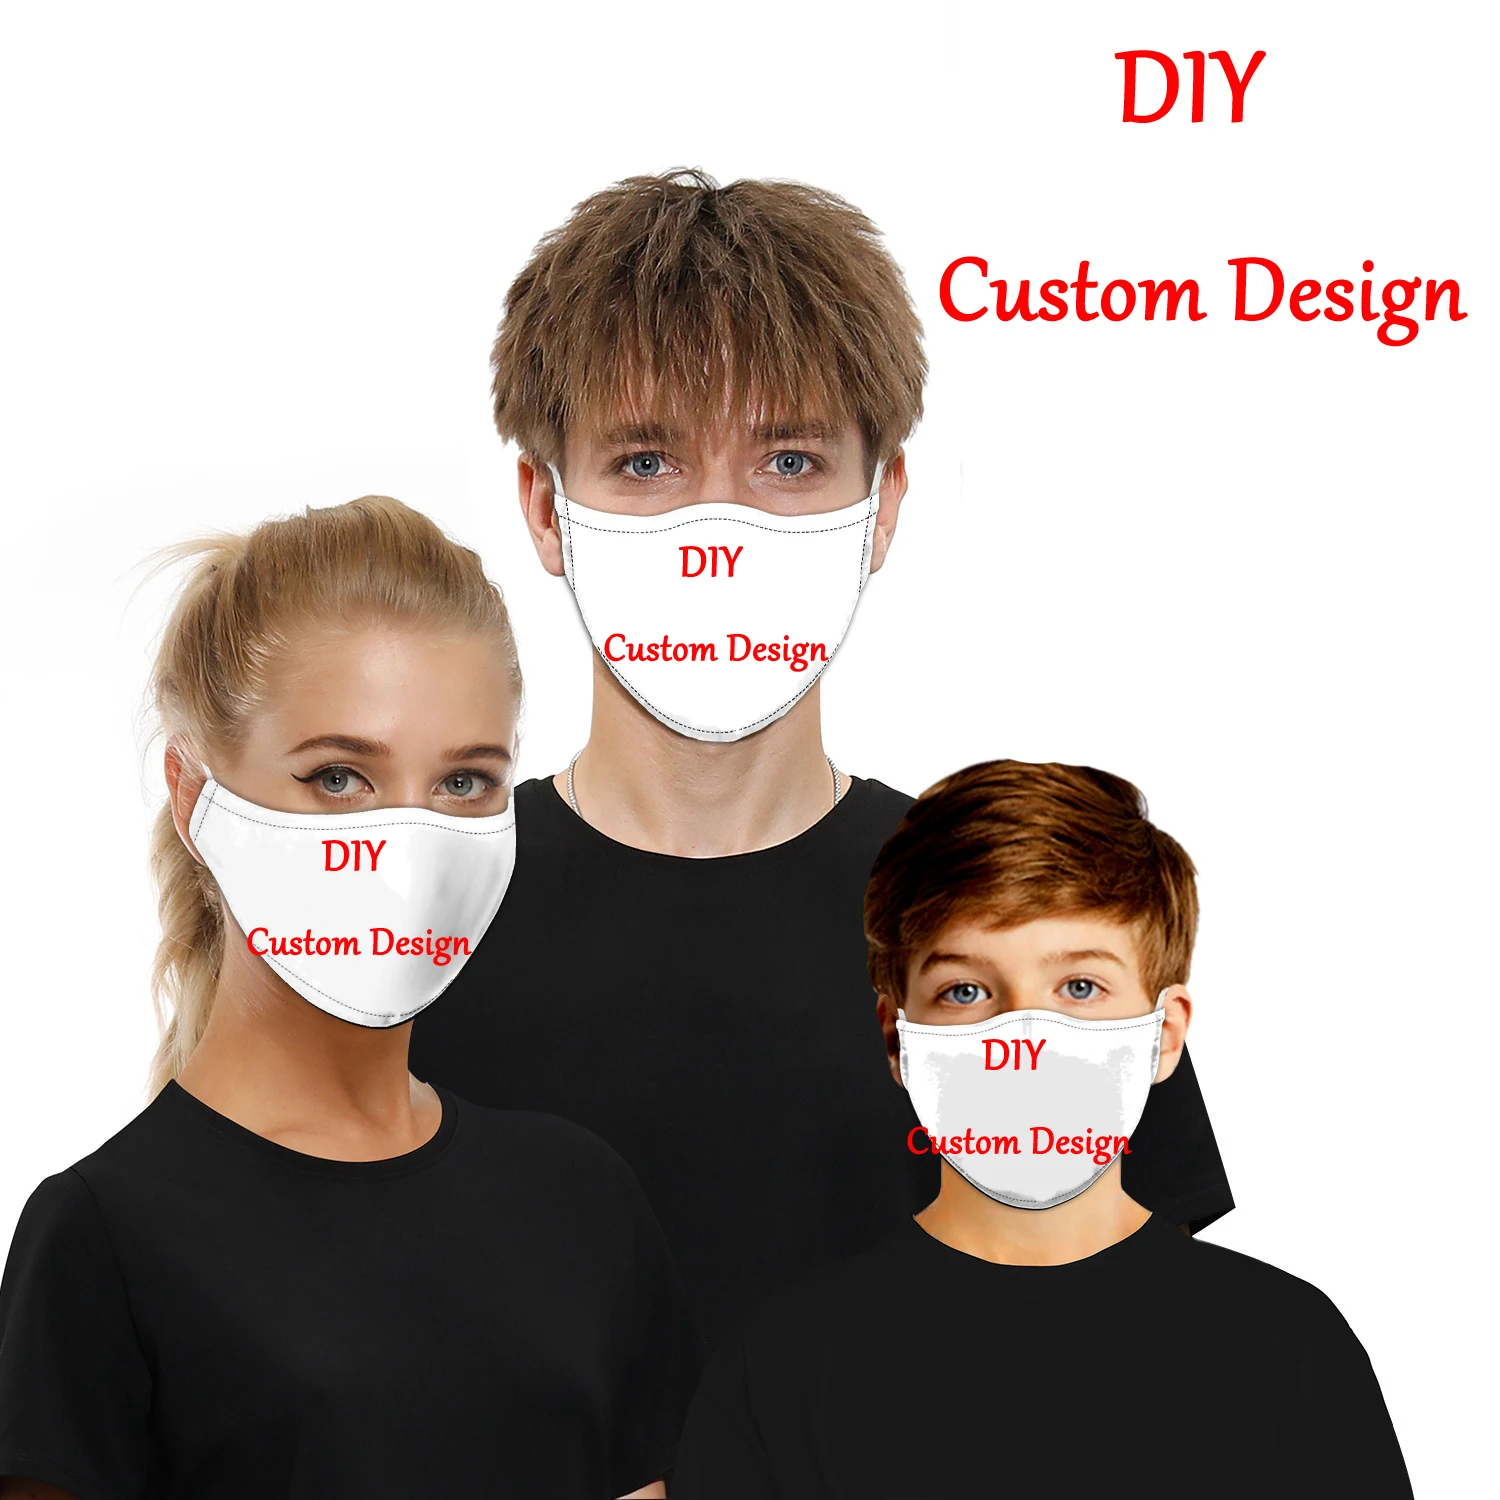 DIY 사용자 정의 디자인 얼굴 마스크, 3D 인쇄 재사용 가능한 방풍 방진 마스크, 남녀 성인/어린이 마스크, 드롭 배송